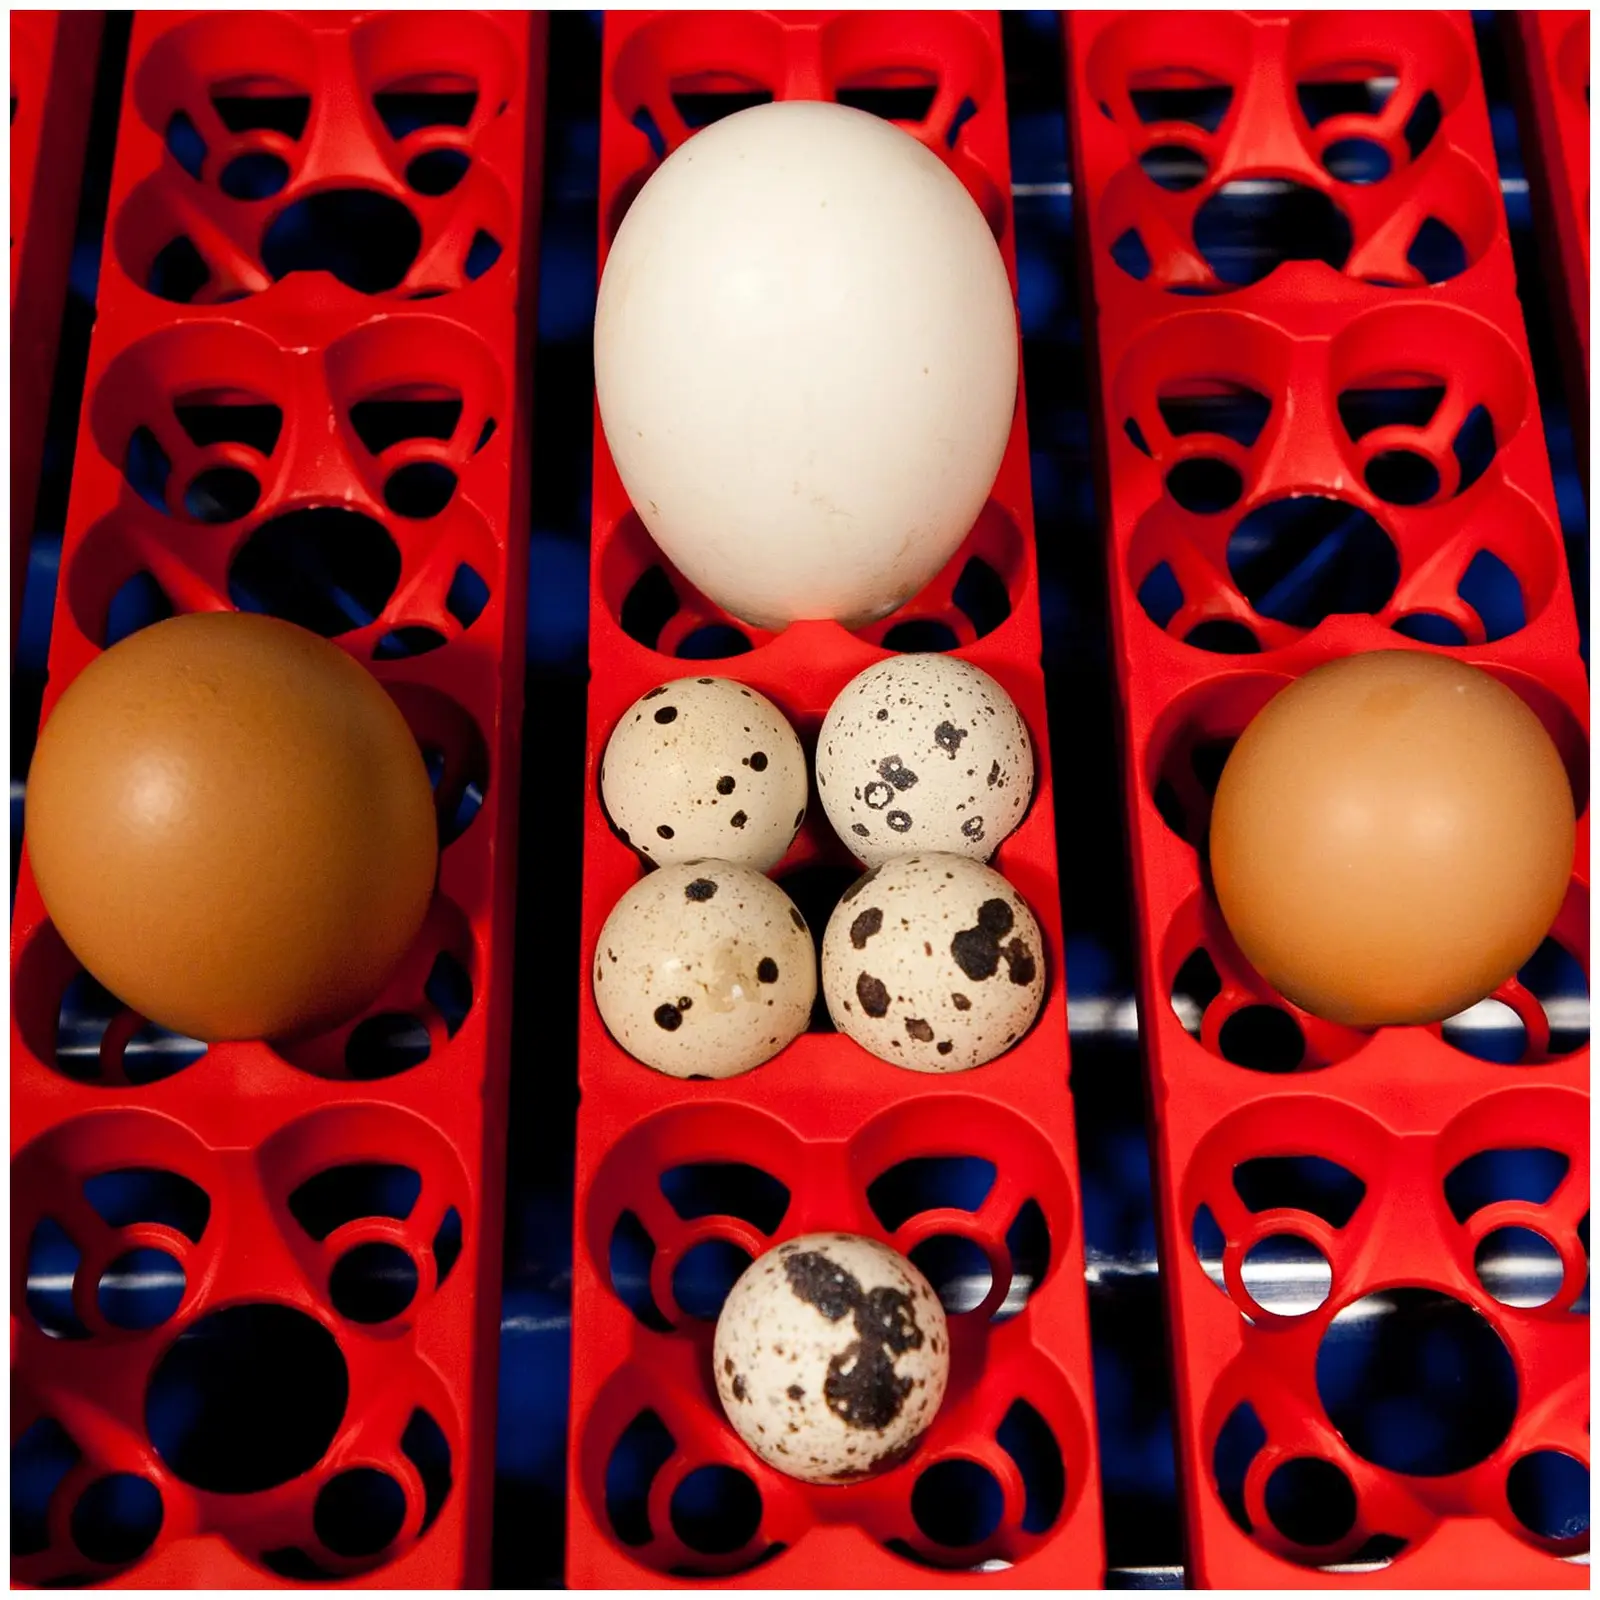 Inkubator do jaj - 24 jaja - dozownik wody - półautomatyczny